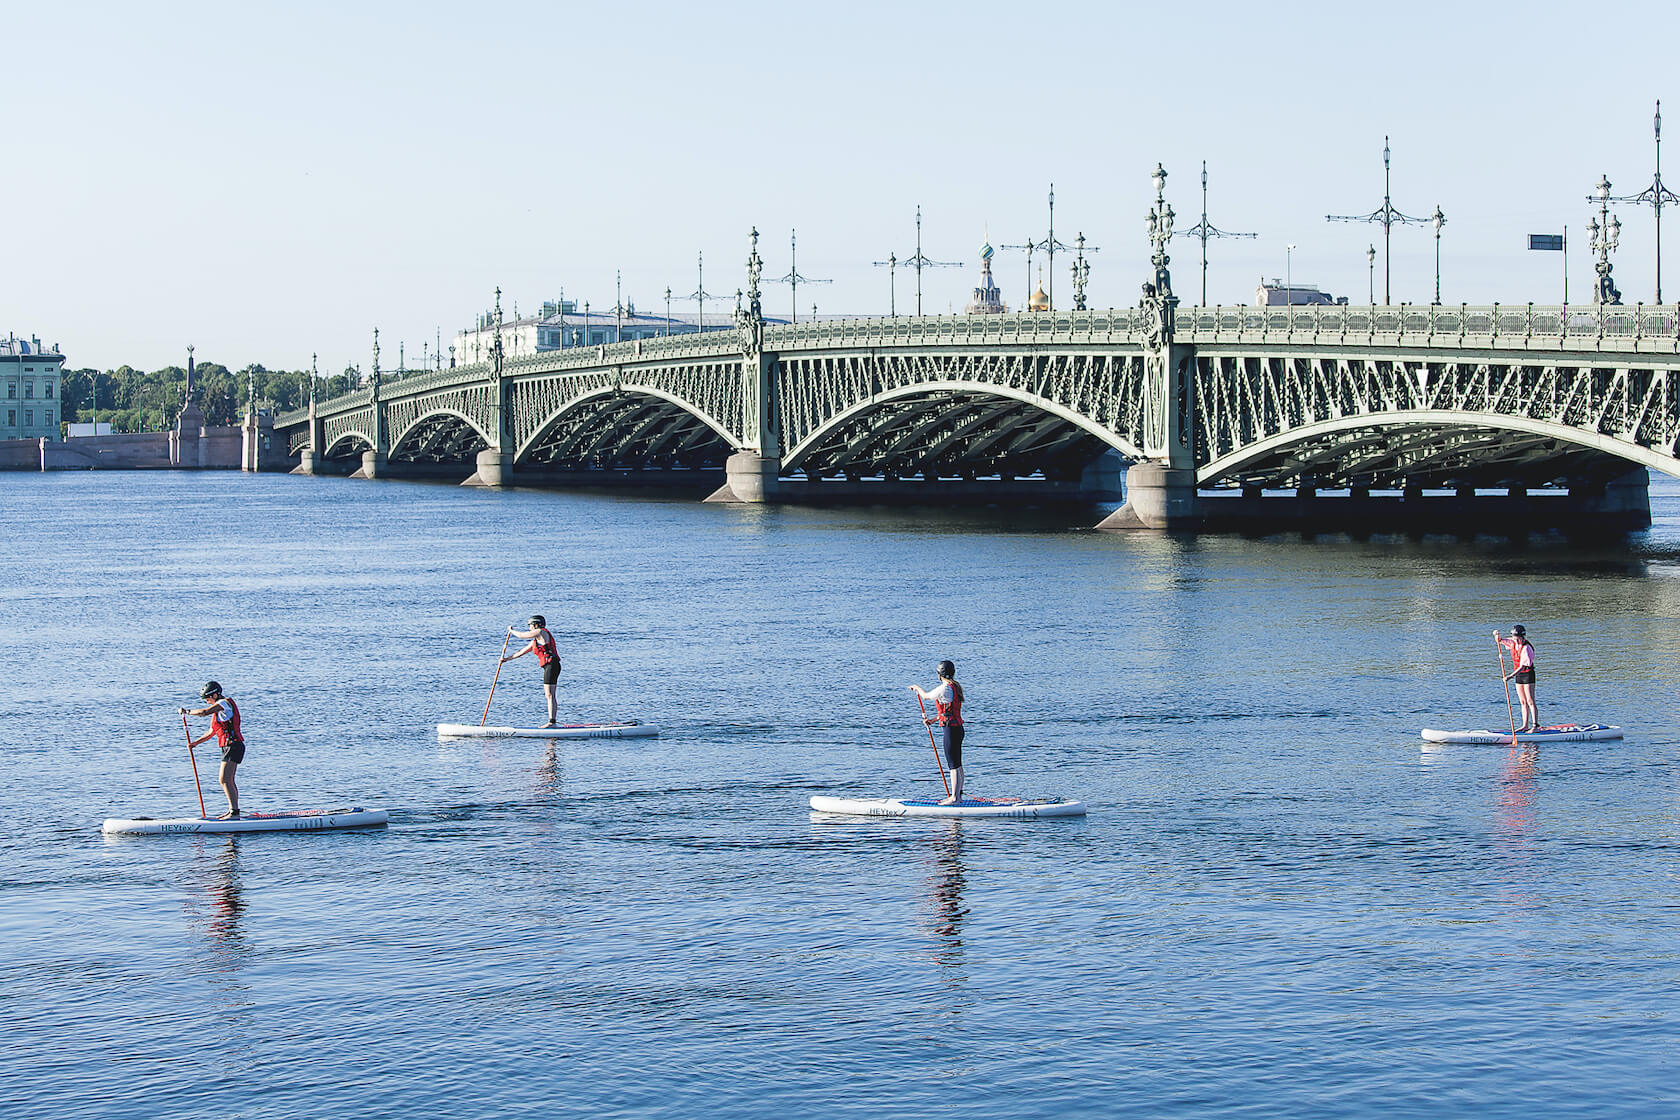 Отдыхая летом в петербурге. Яхтенный мост. Sup финский залив. Катание СПБ. Велосипедисты на яхтенном мосту.